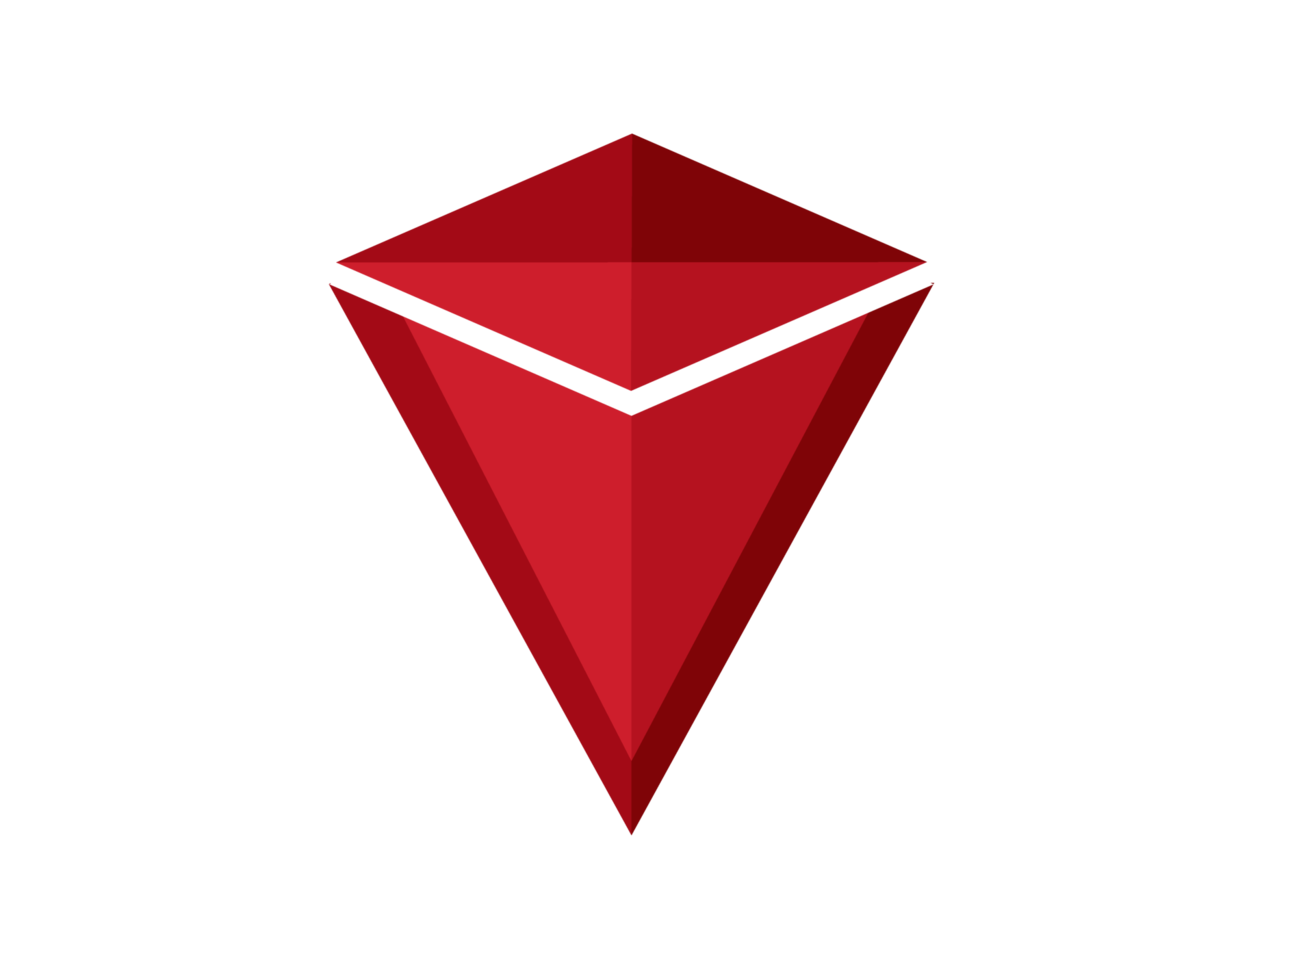 Red rectangular pyramid logo icon png